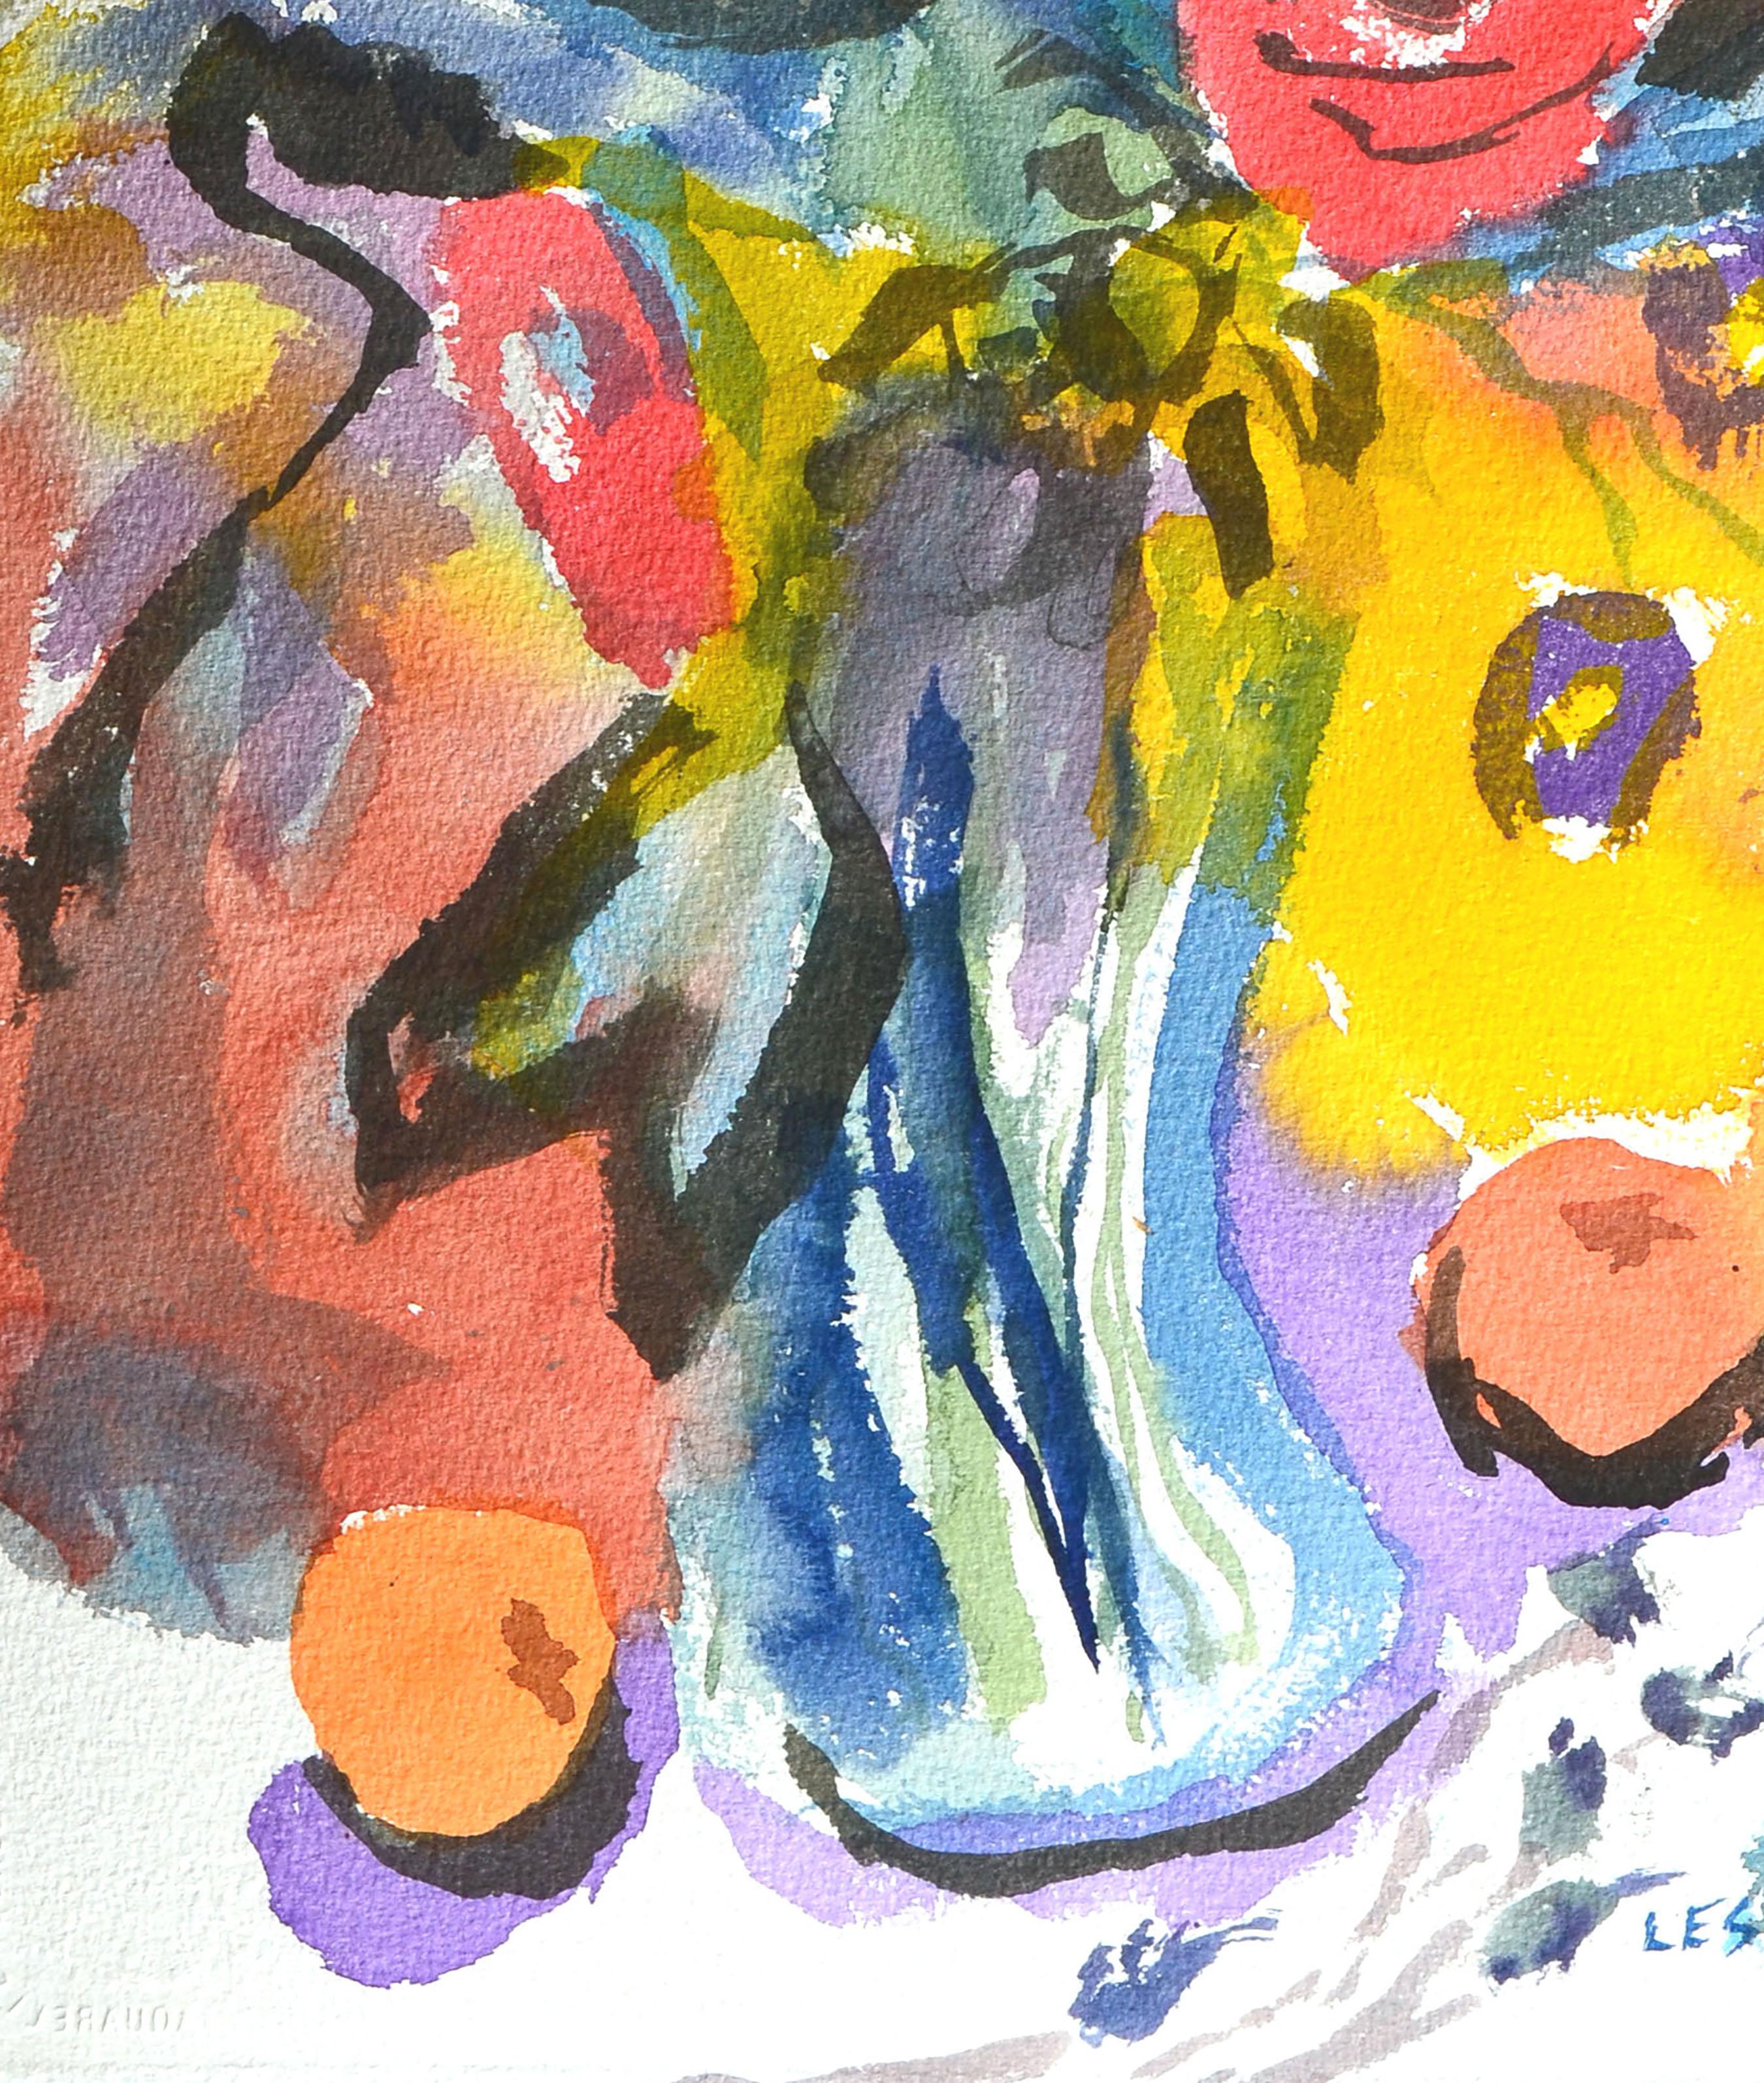 Farbenfrohes Aquarellstillleben mit einer Blumenvase und verschiedenen Früchten des kalifornischen Künstlers Les (Leslie Luverne) Anderson (Amerikaner, 1928-2009). Aus dem Nachlass von Les Anderson in Monterey, Kalifornien. Signiert 